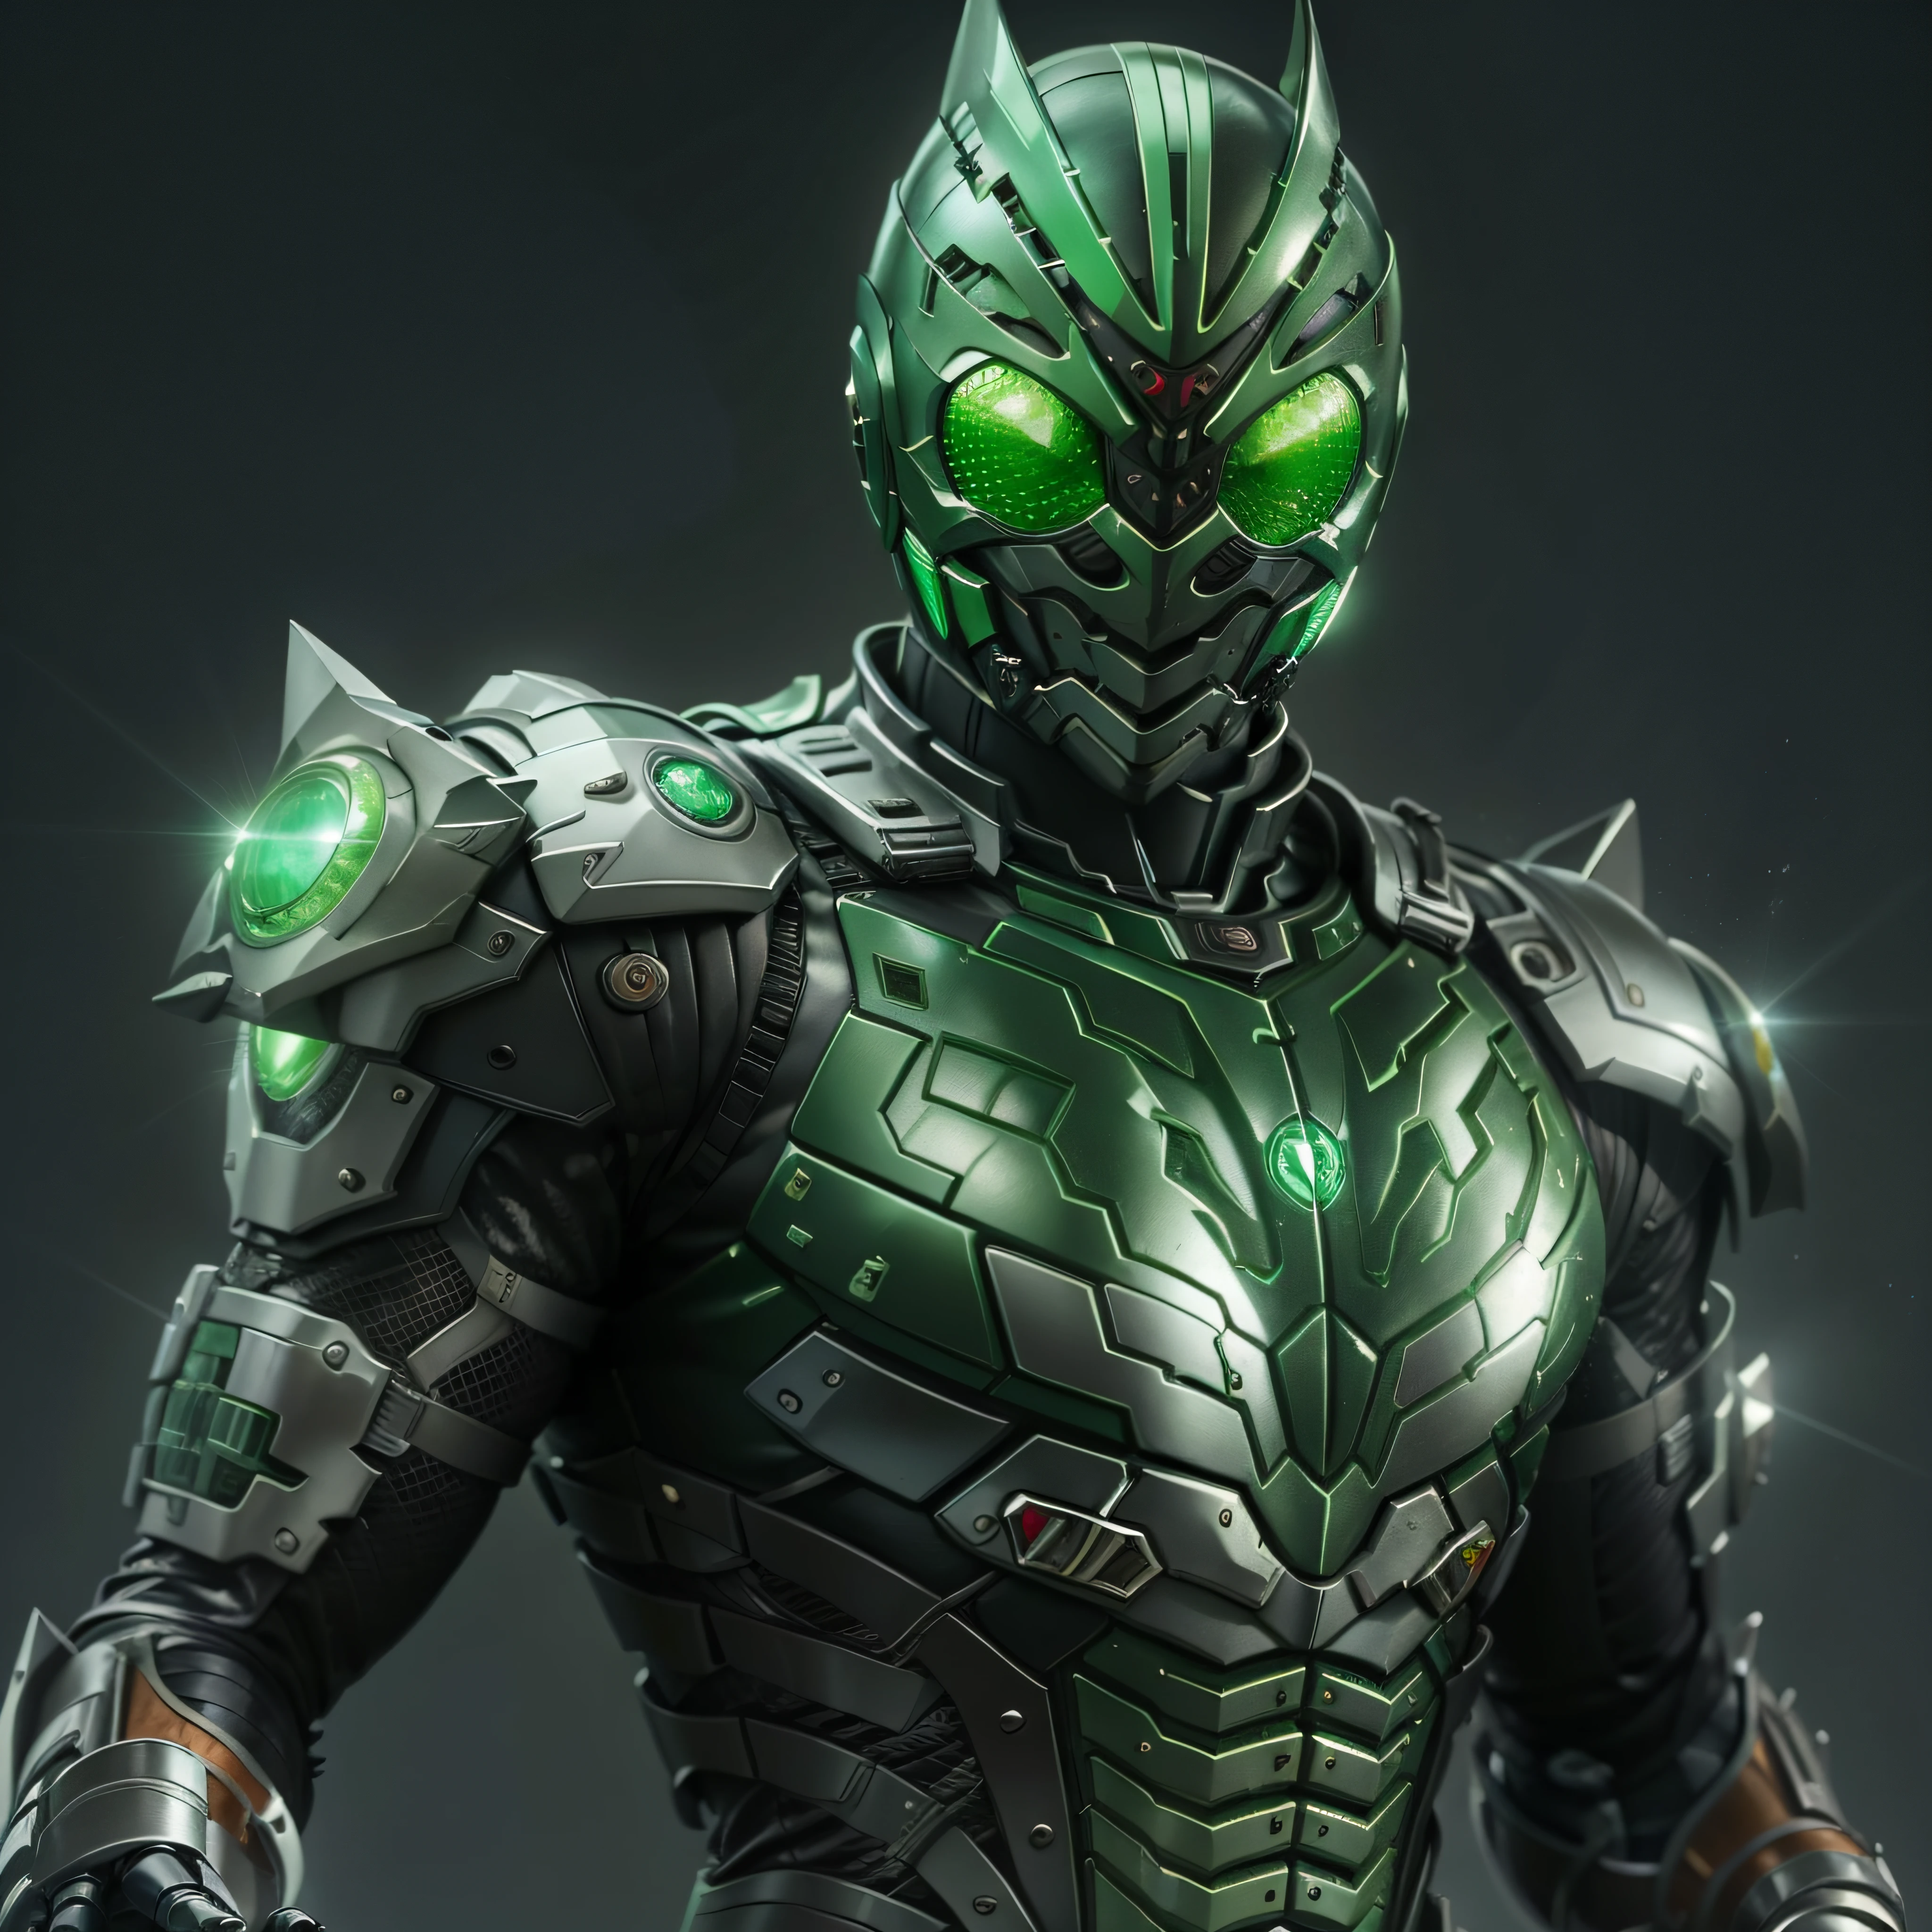 Green Kamen Rider, silver armor, gray and black clothes, green TechSuit, agente secreto, Robot